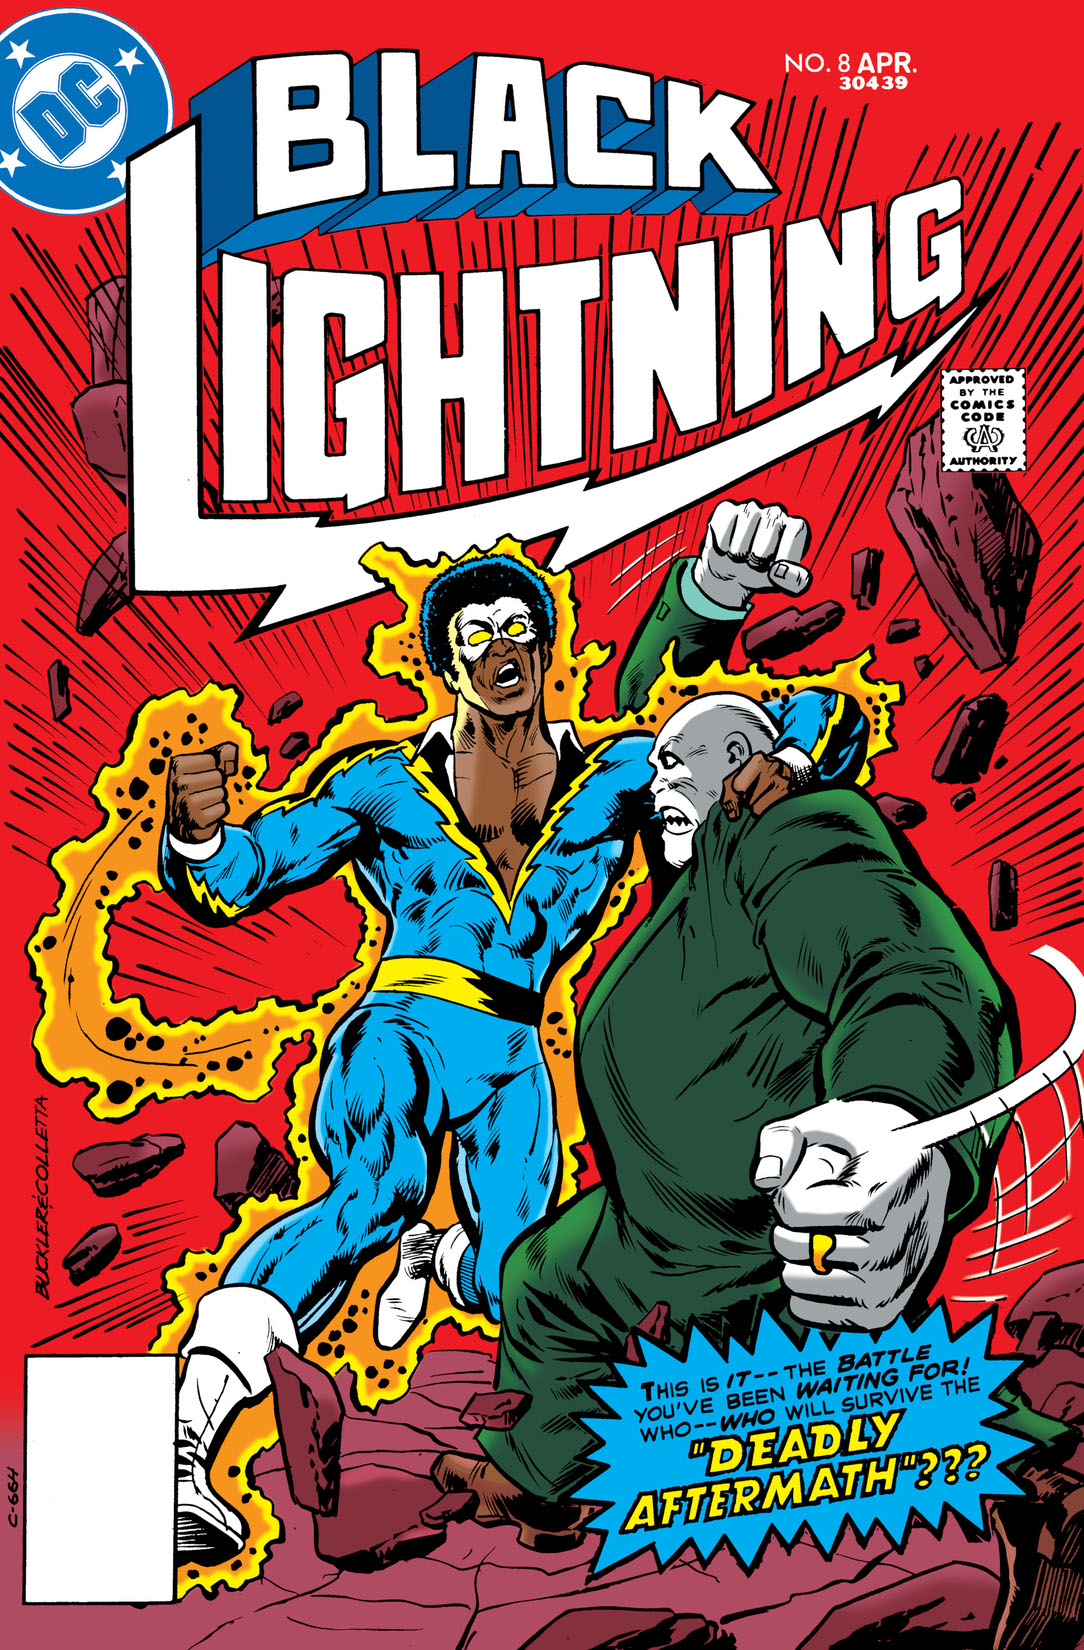 Black Lightning (1977-) #8 preview images